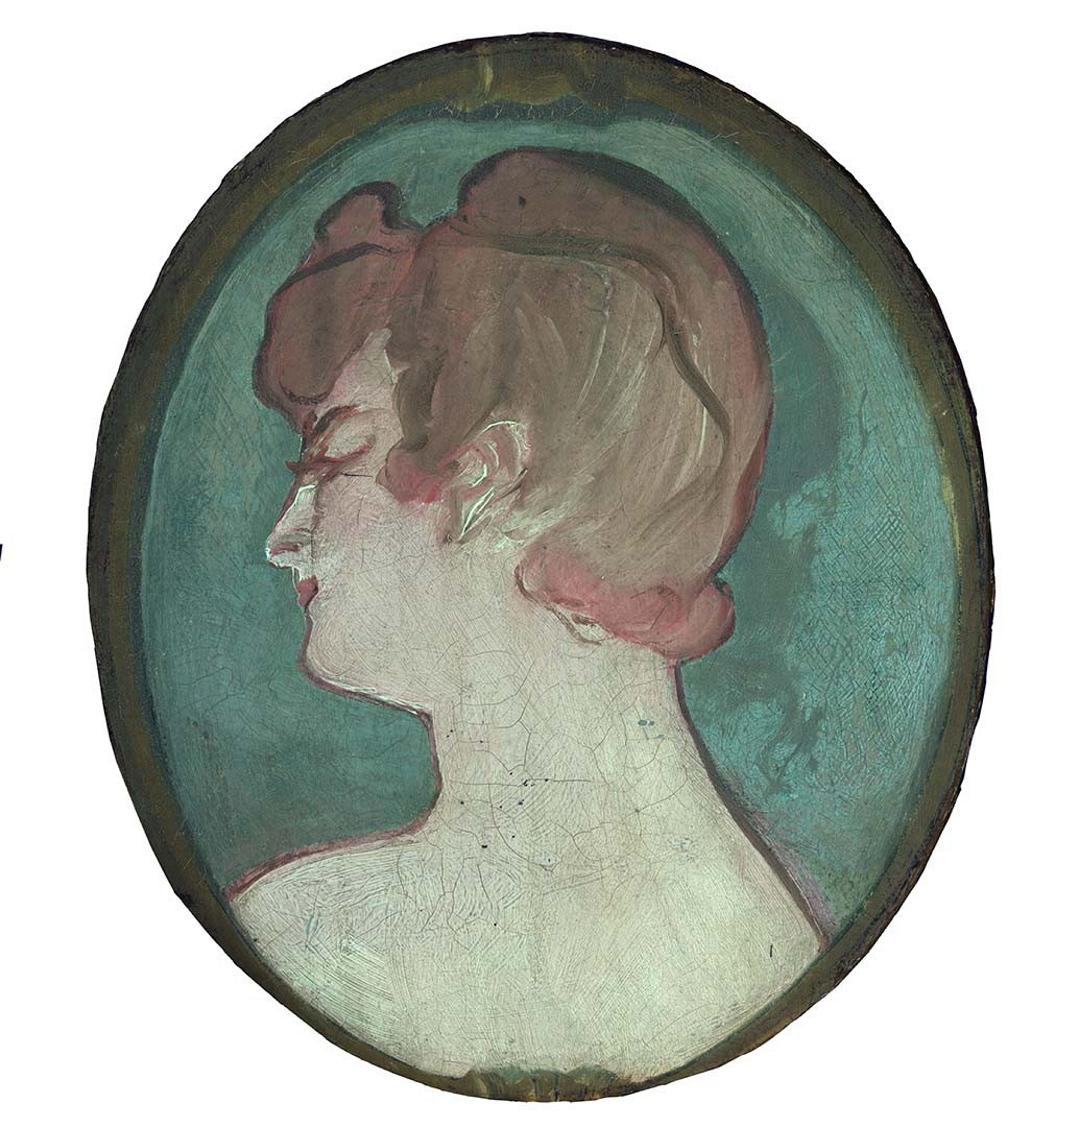 Slider: UV, Tete de fille (Head of a girl) 1892 